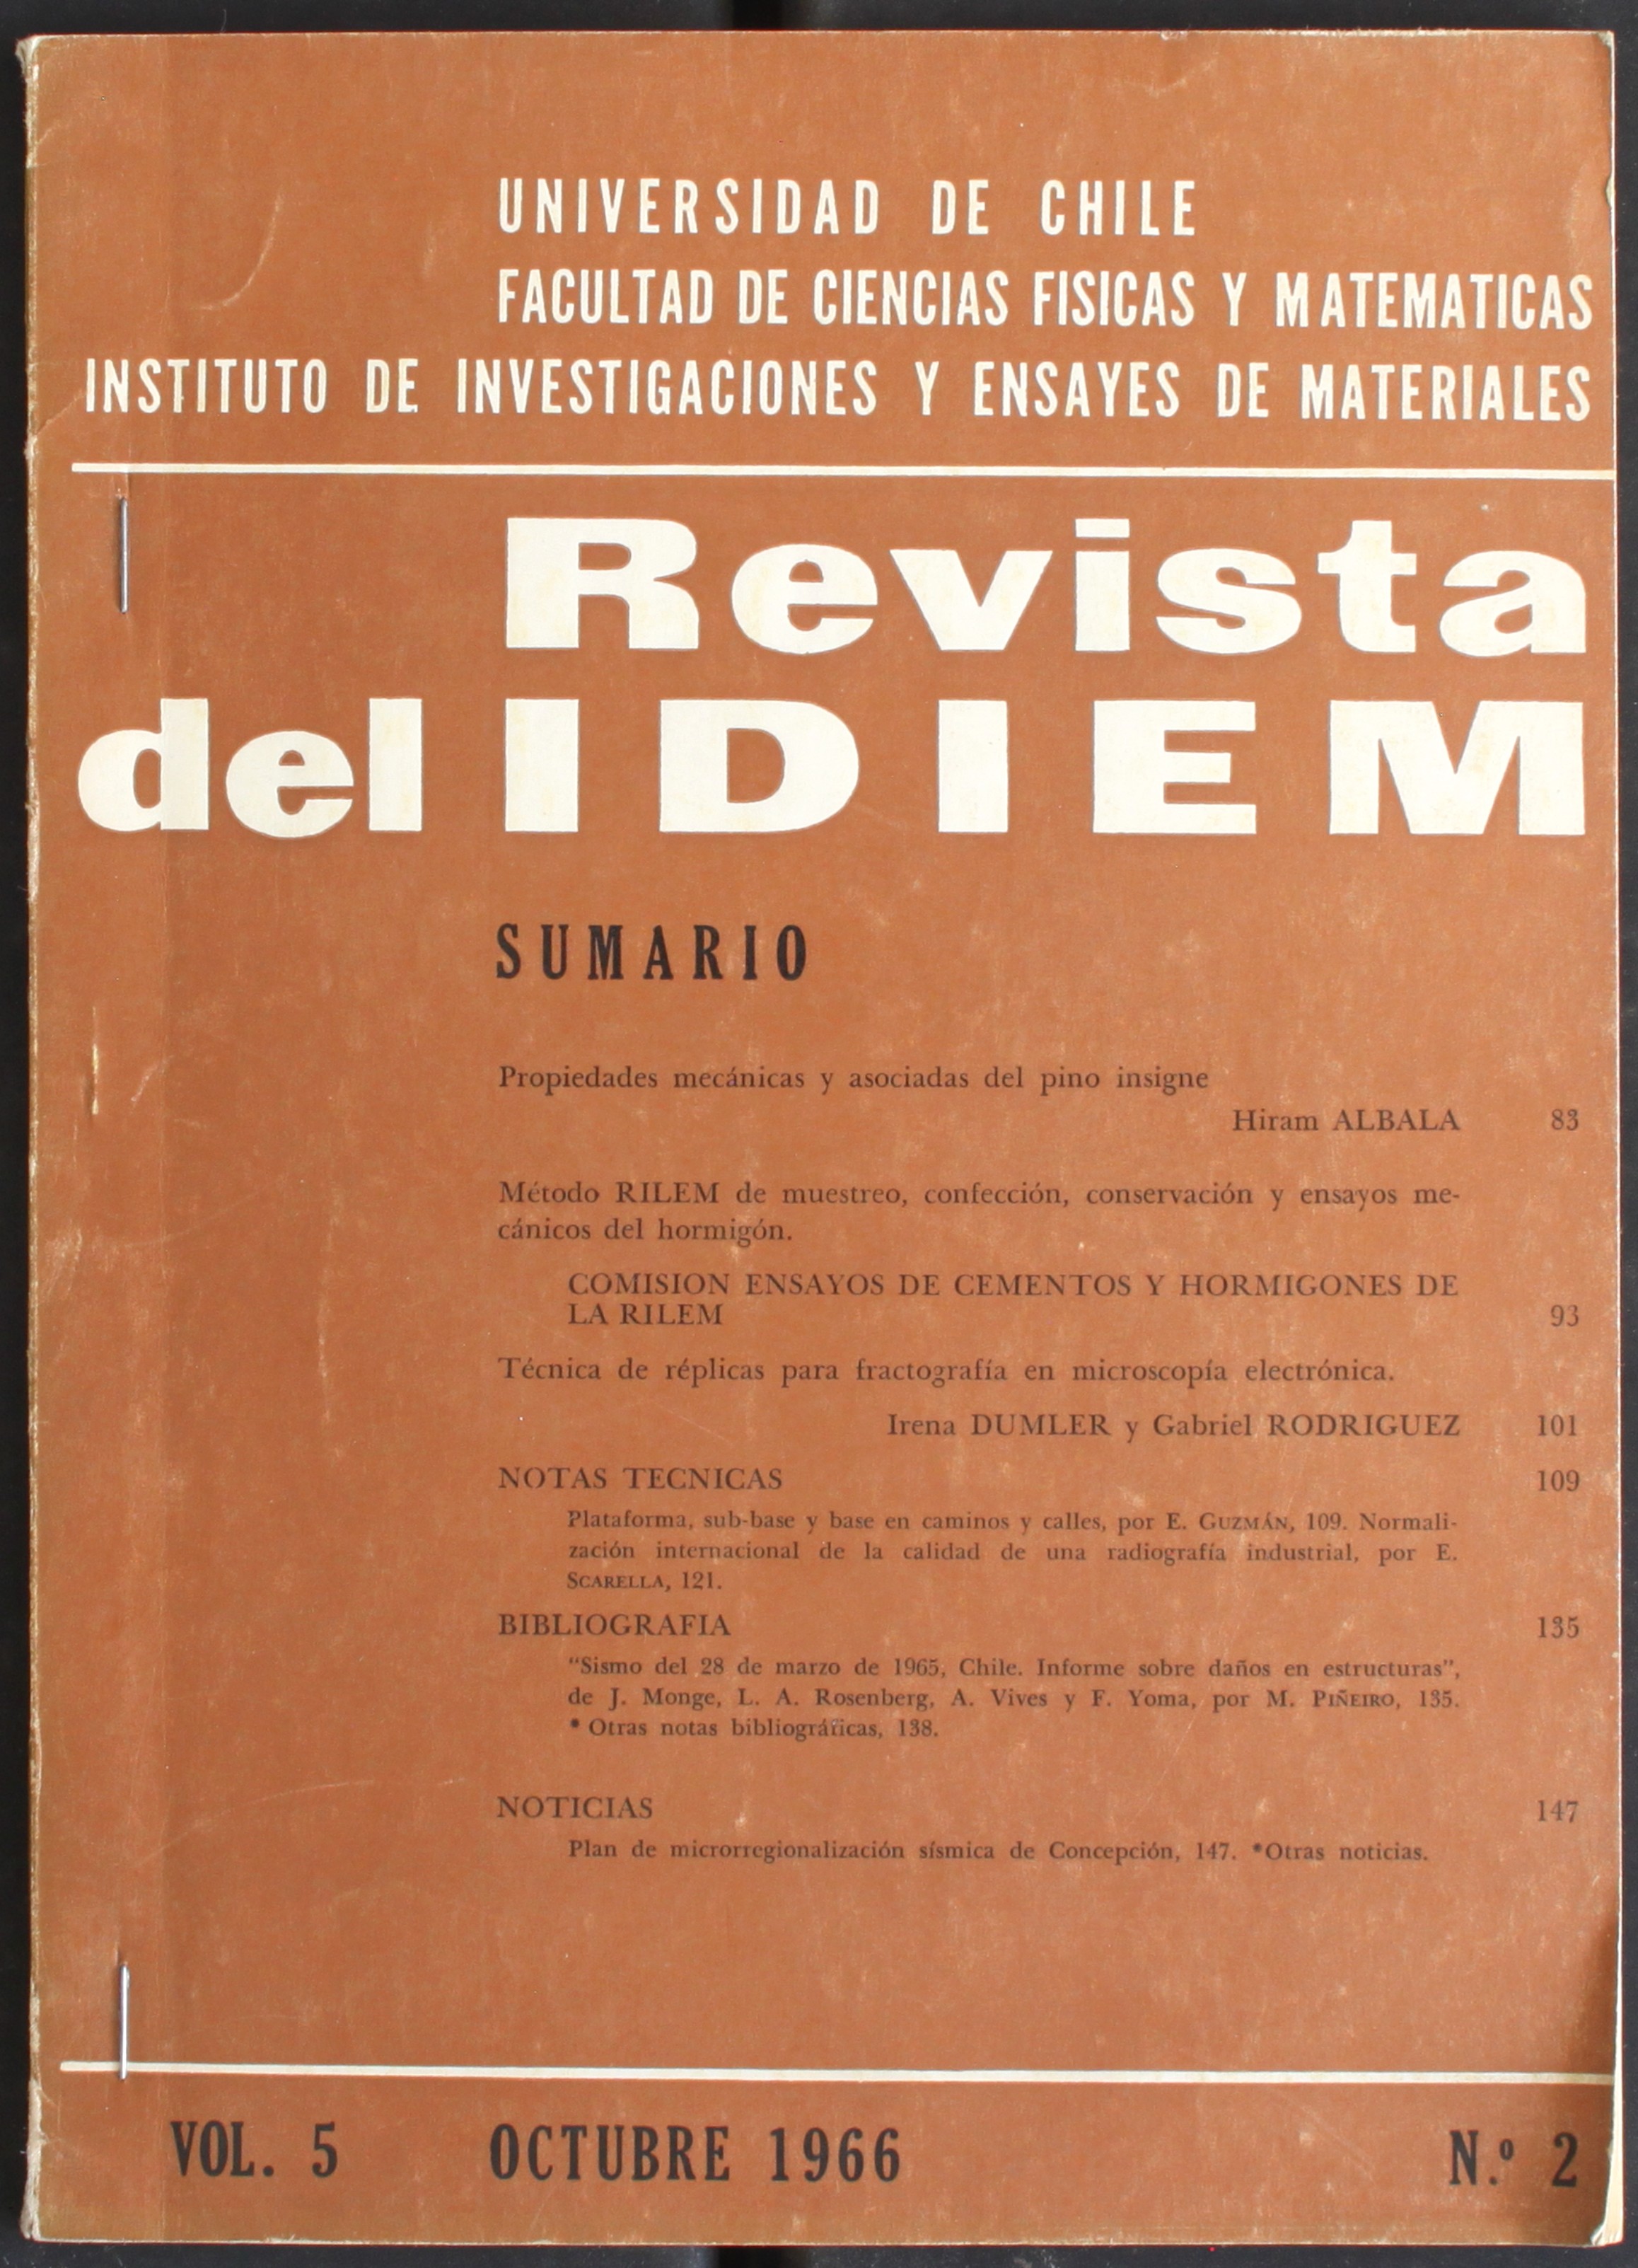 												Ver Vol. 5 Núm. 1 (1966): Año 1966, mayo
											